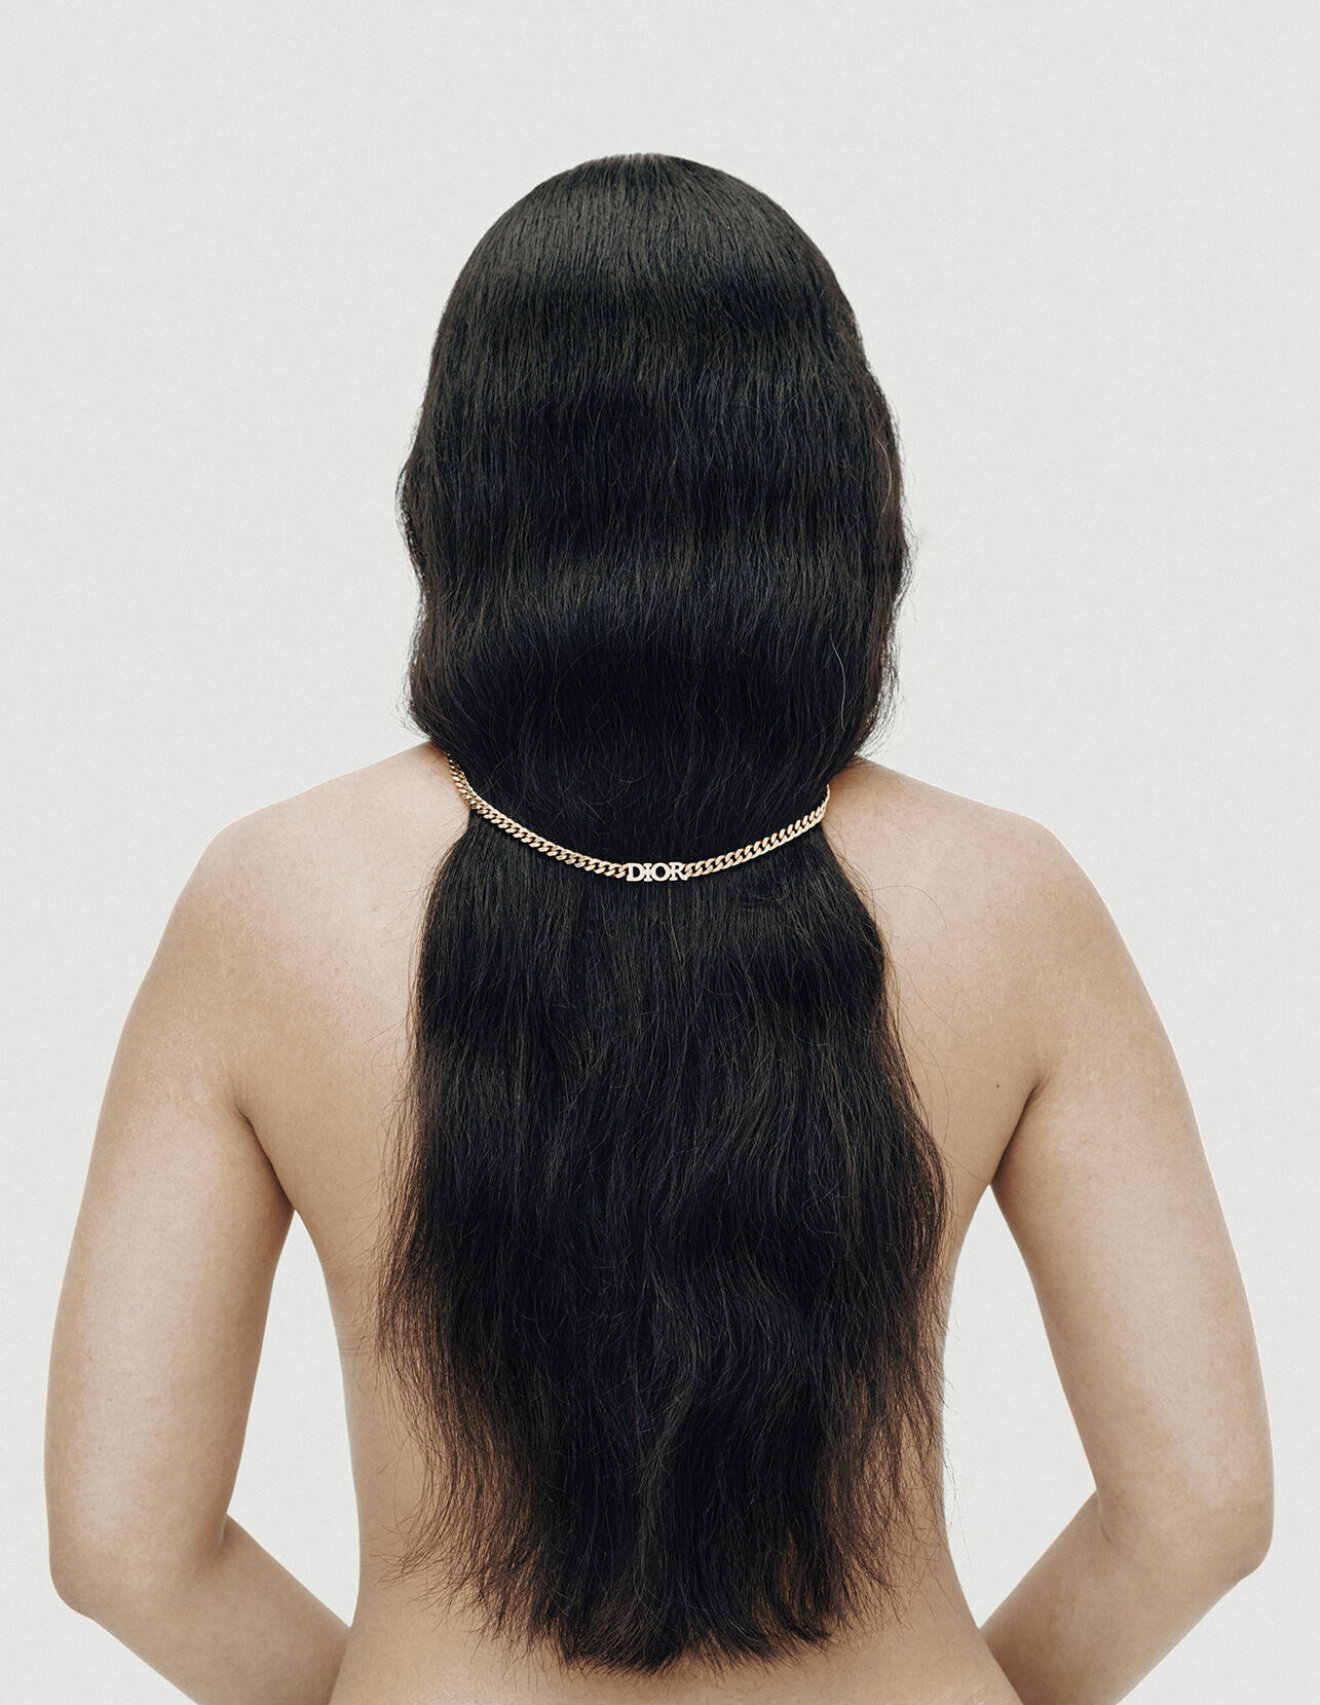 Modellen har på sig ett halsband över håret från Dior.